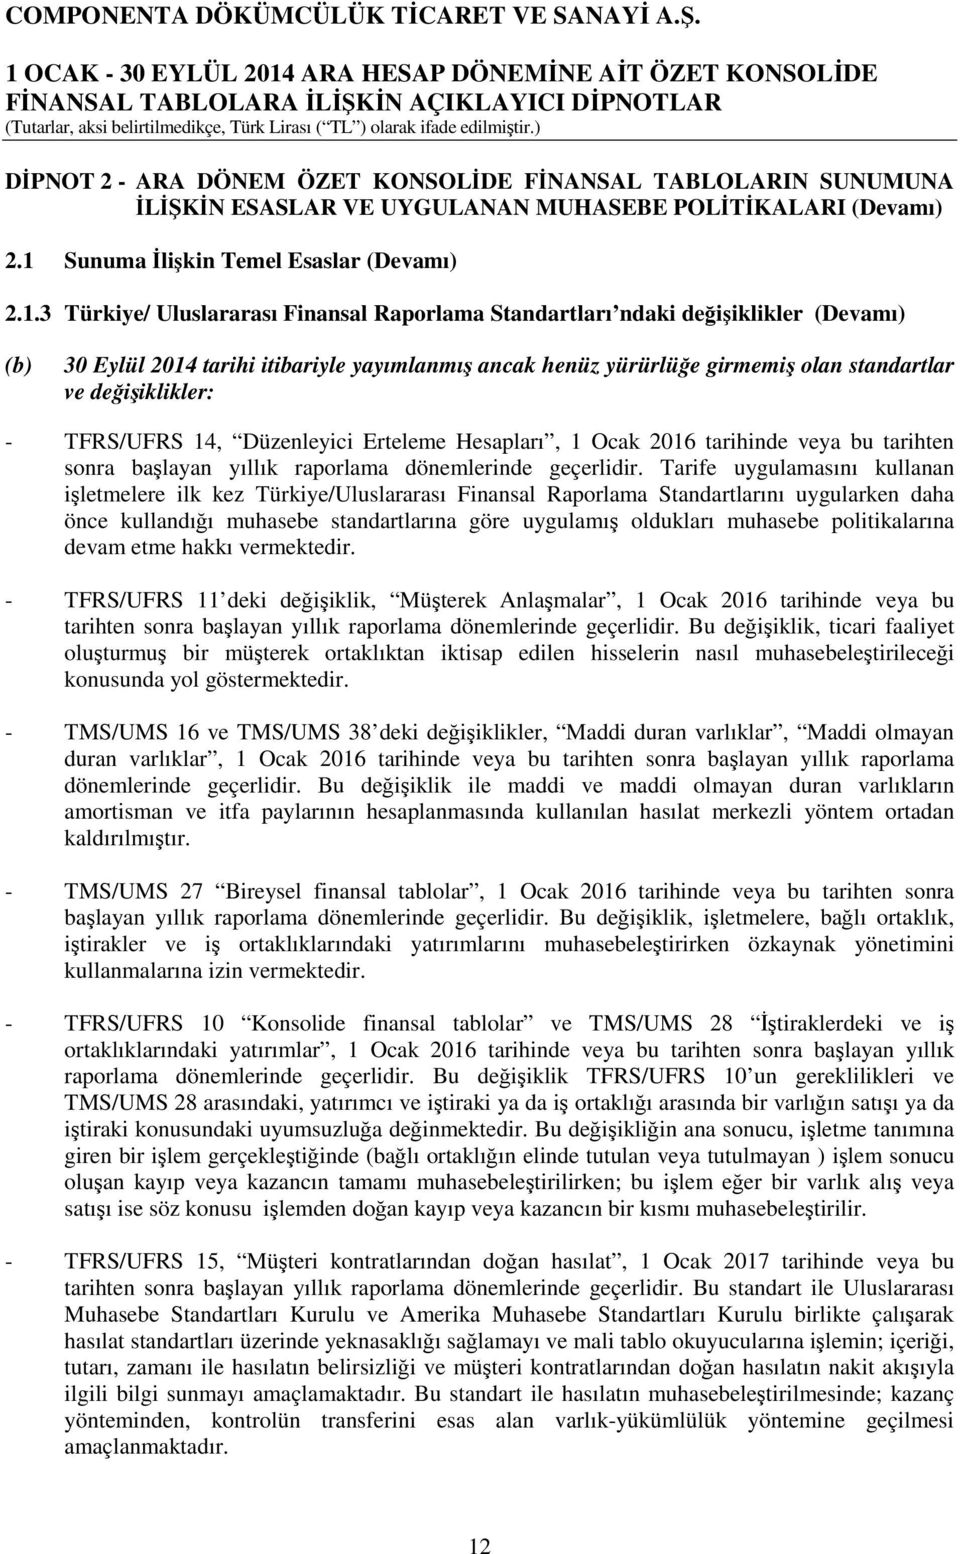 3 Türkiye/ Uluslararası Finansal Raporlama Standartları ndaki değişiklikler (Devamı) (b) 30 Eylül 2014 tarihi itibariyle yayımlanmış ancak henüz yürürlüğe girmemiş olan standartlar ve değişiklikler: